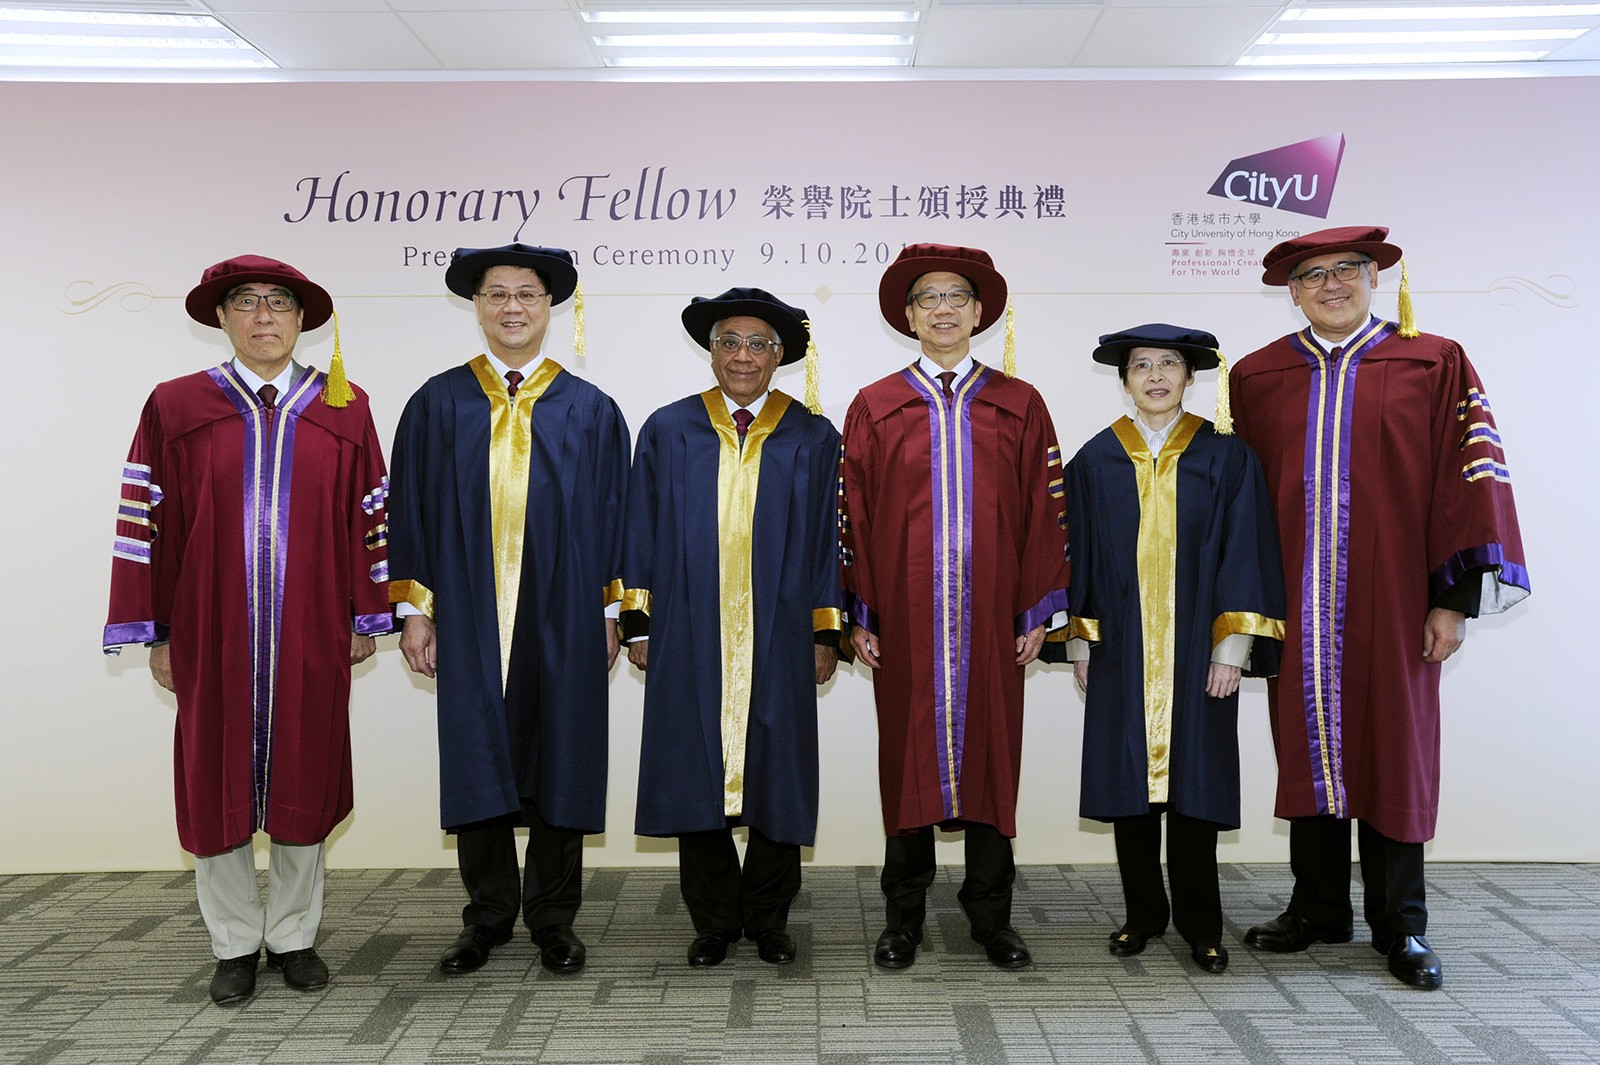 (From left) Professor Way Kuo, Mr Wong Chun-hong, Mr Harry S. Banga, Dr Chung Shui-ming, Miss Tong Hing-min, and Mr Lester Garson Huang.